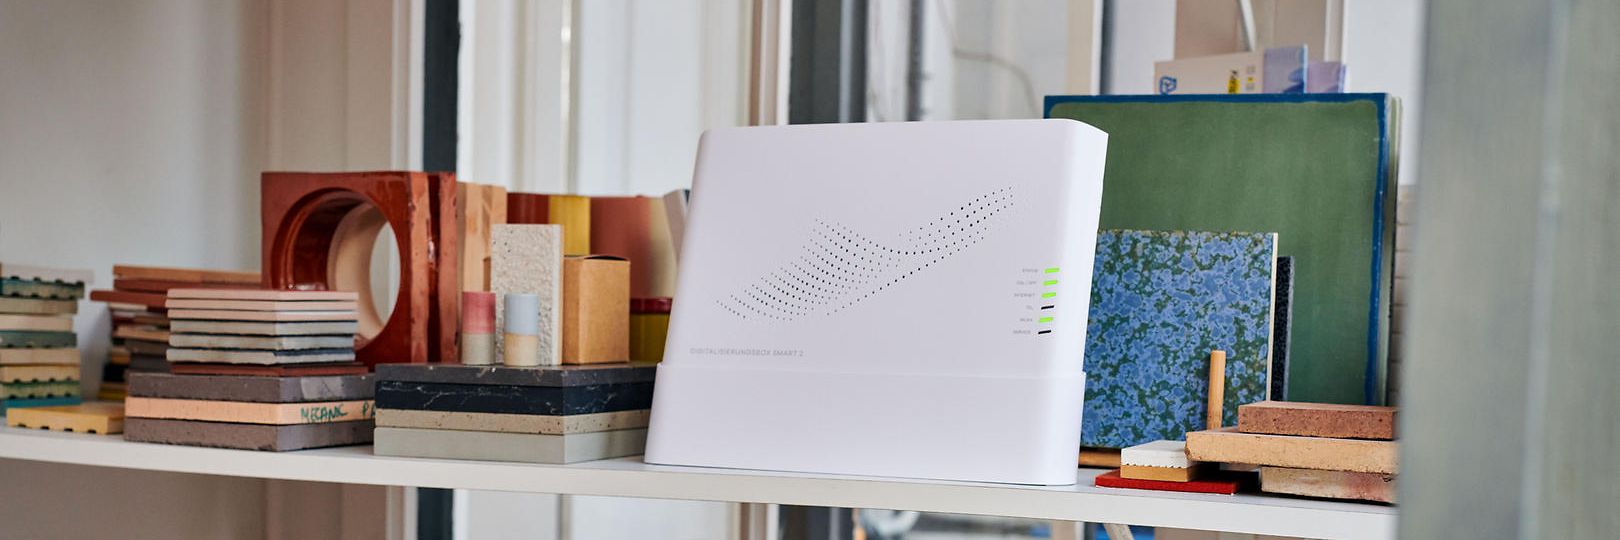 Die Digitalisierungsbox al Business-Router für kleine Netzwerke steht auf einem Regal.